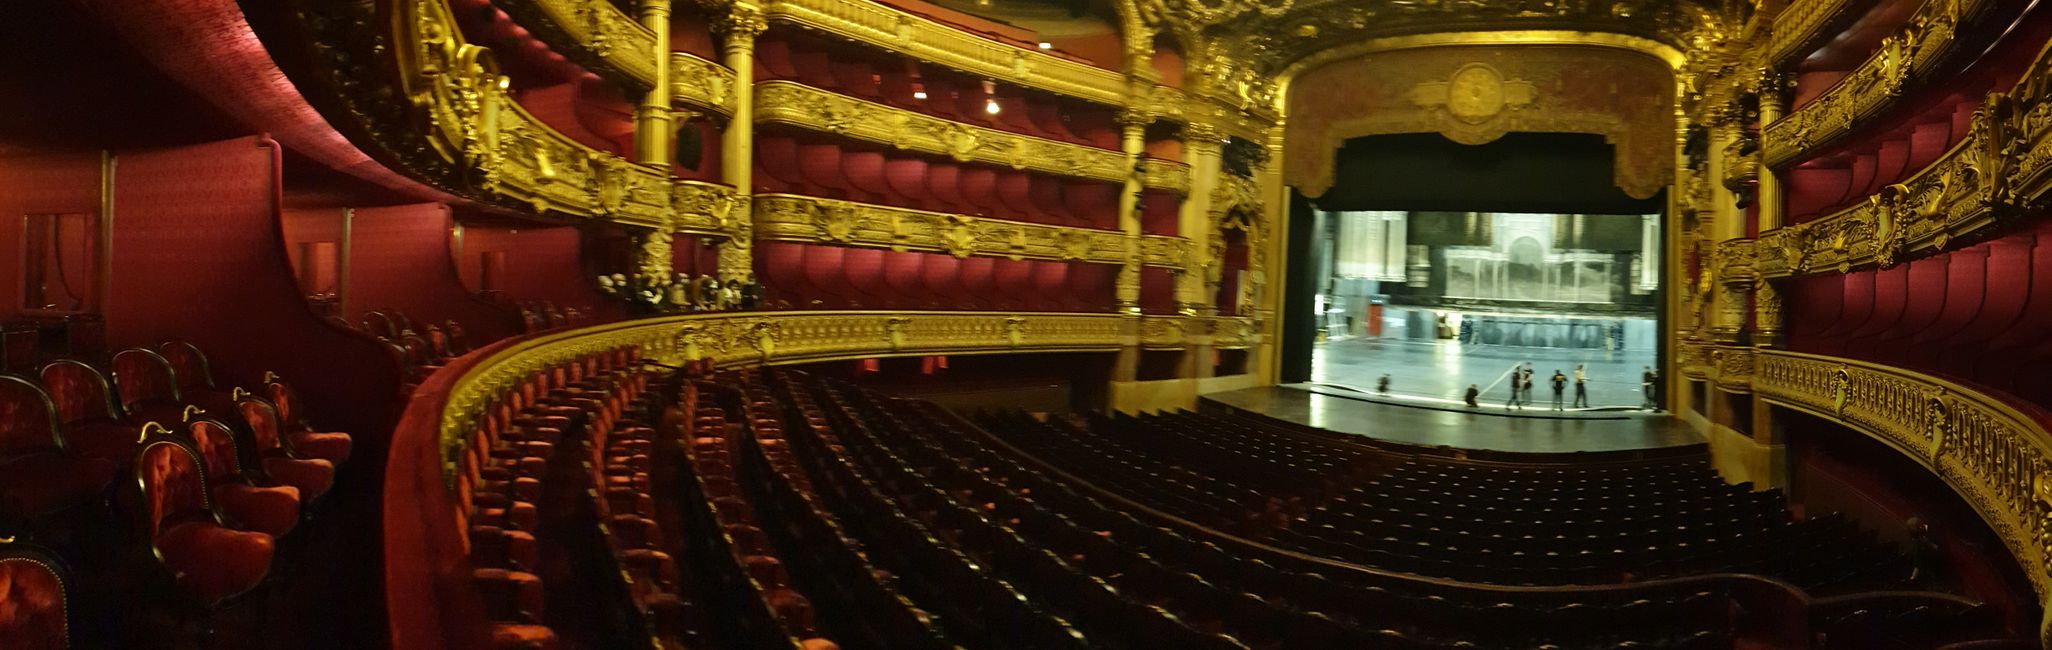 Opéra Garnier – Zuschauerraum und Bühne